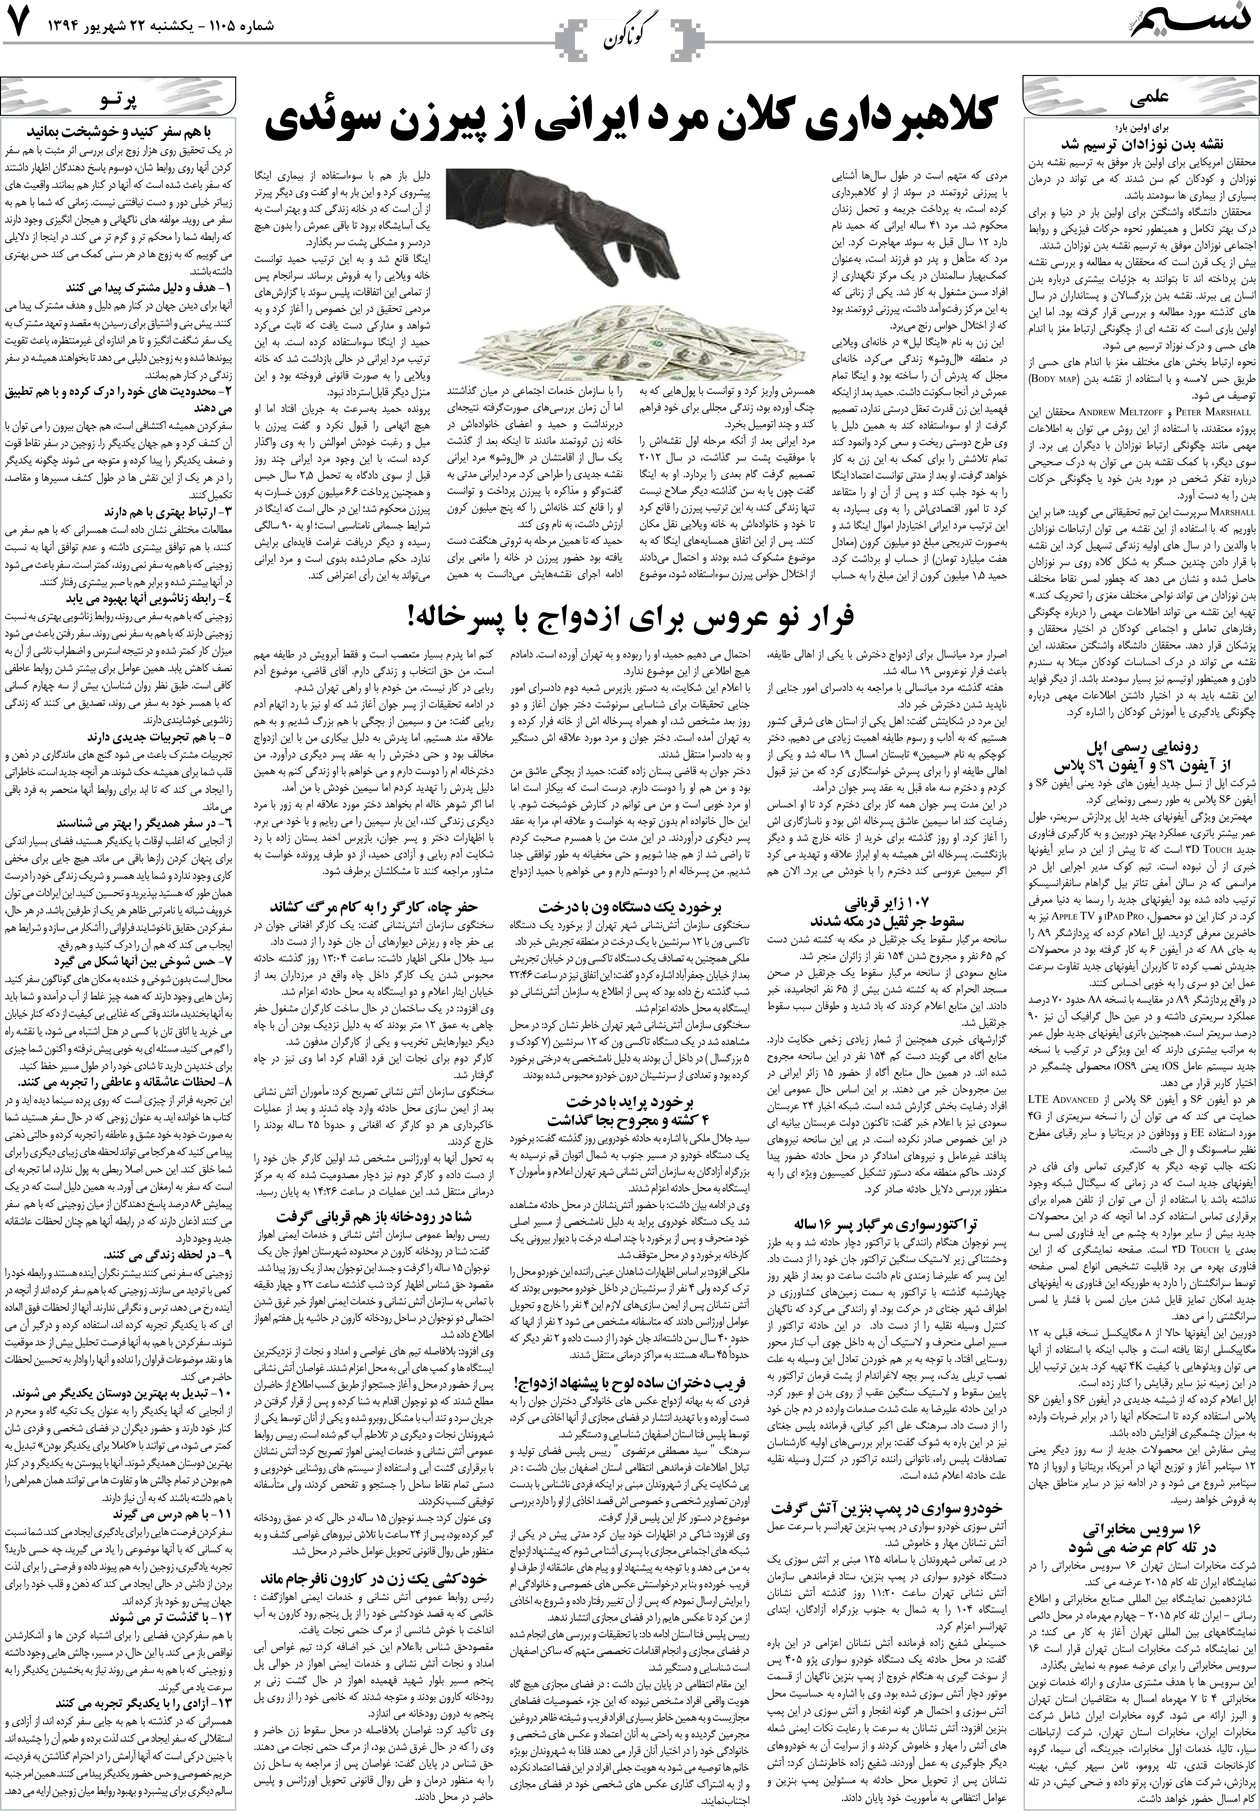 صفحه گوناگون روزنامه نسیم شماره 1105